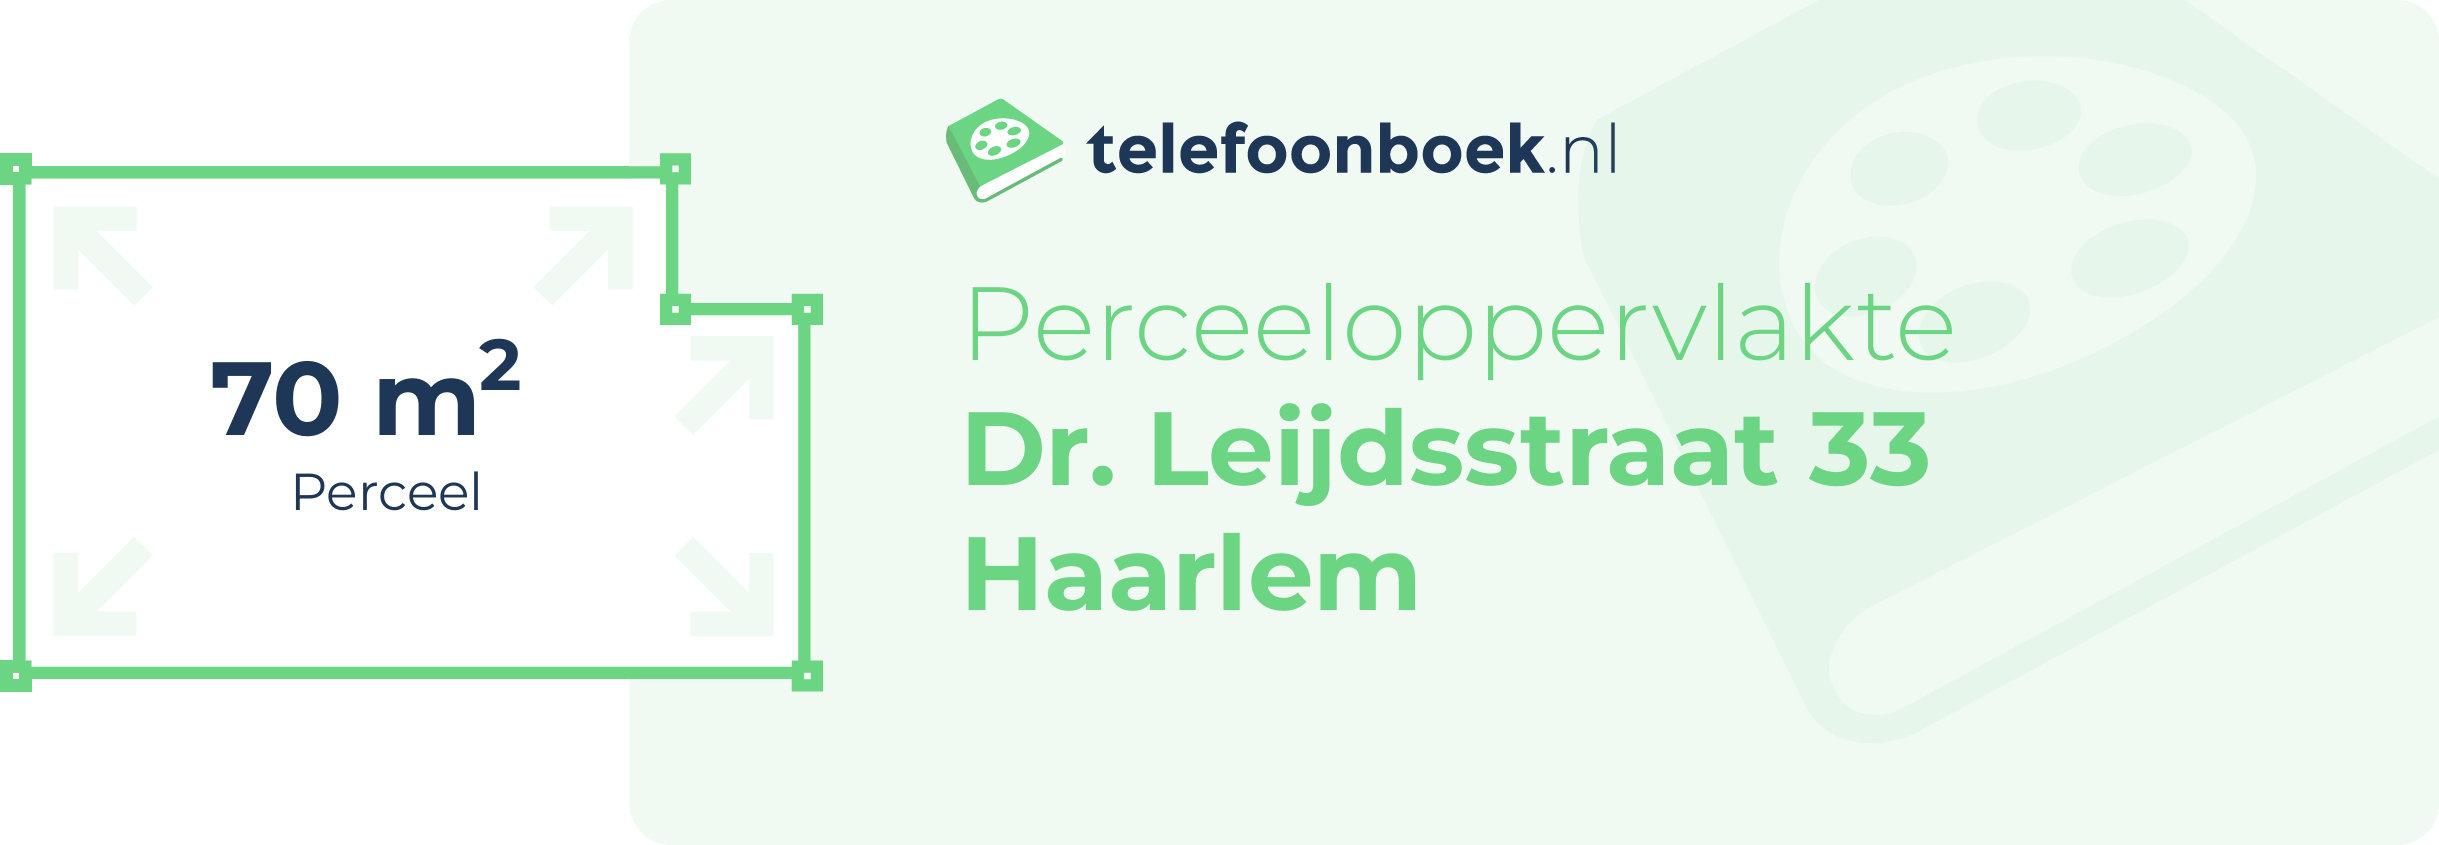 Perceeloppervlakte Dr. Leijdsstraat 33 Haarlem